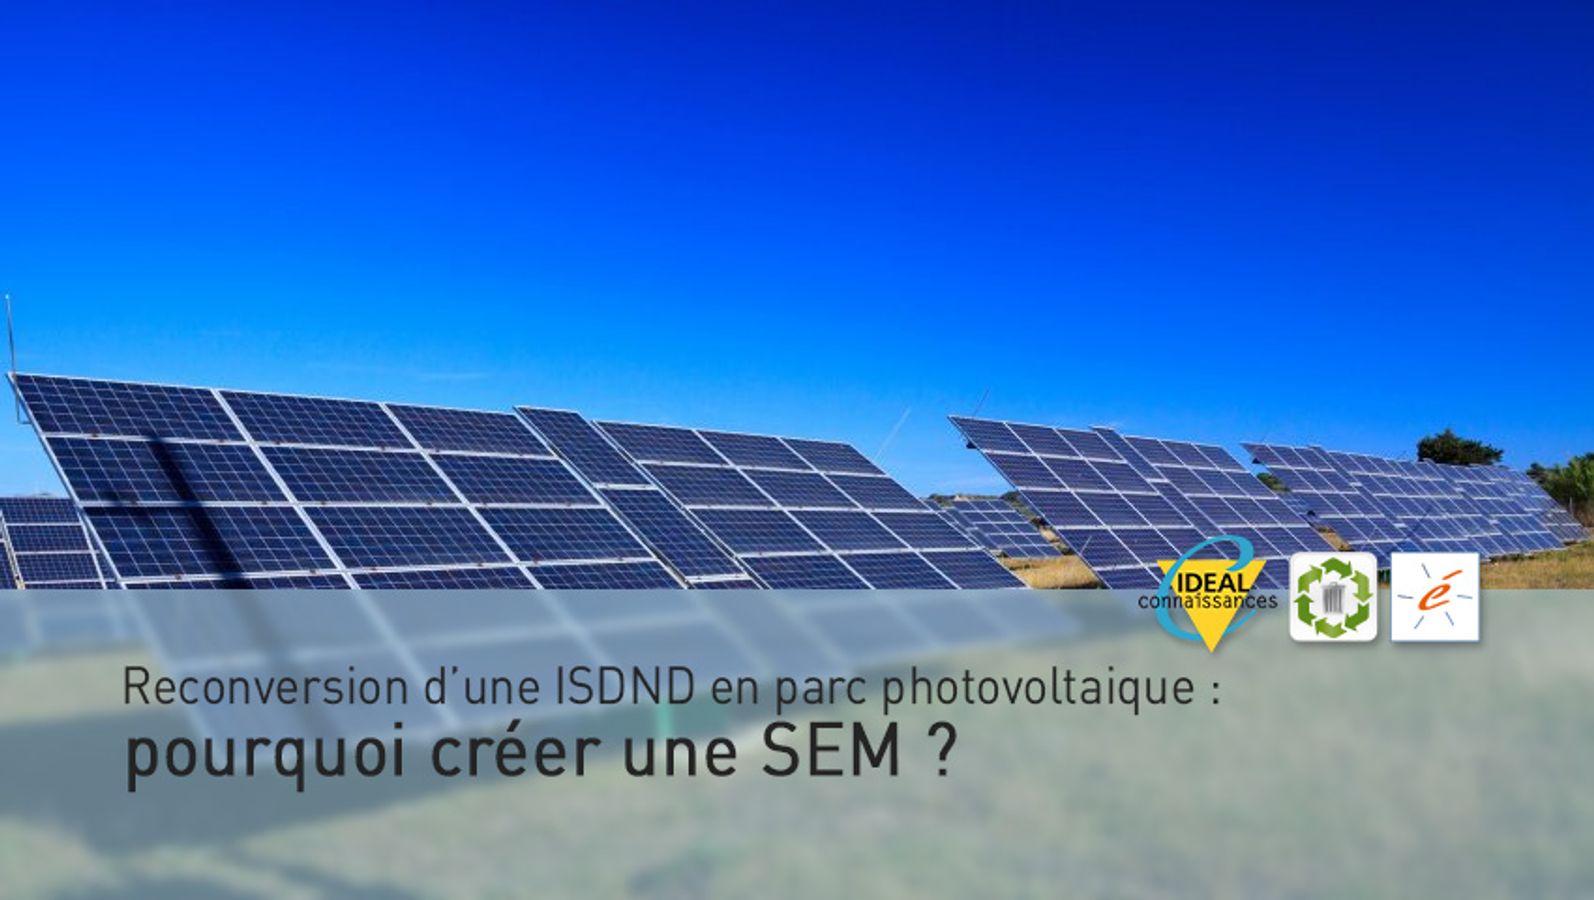 Reconversion d’une ISDND en parc photovoltaique : pourquoi créer une SEM ?